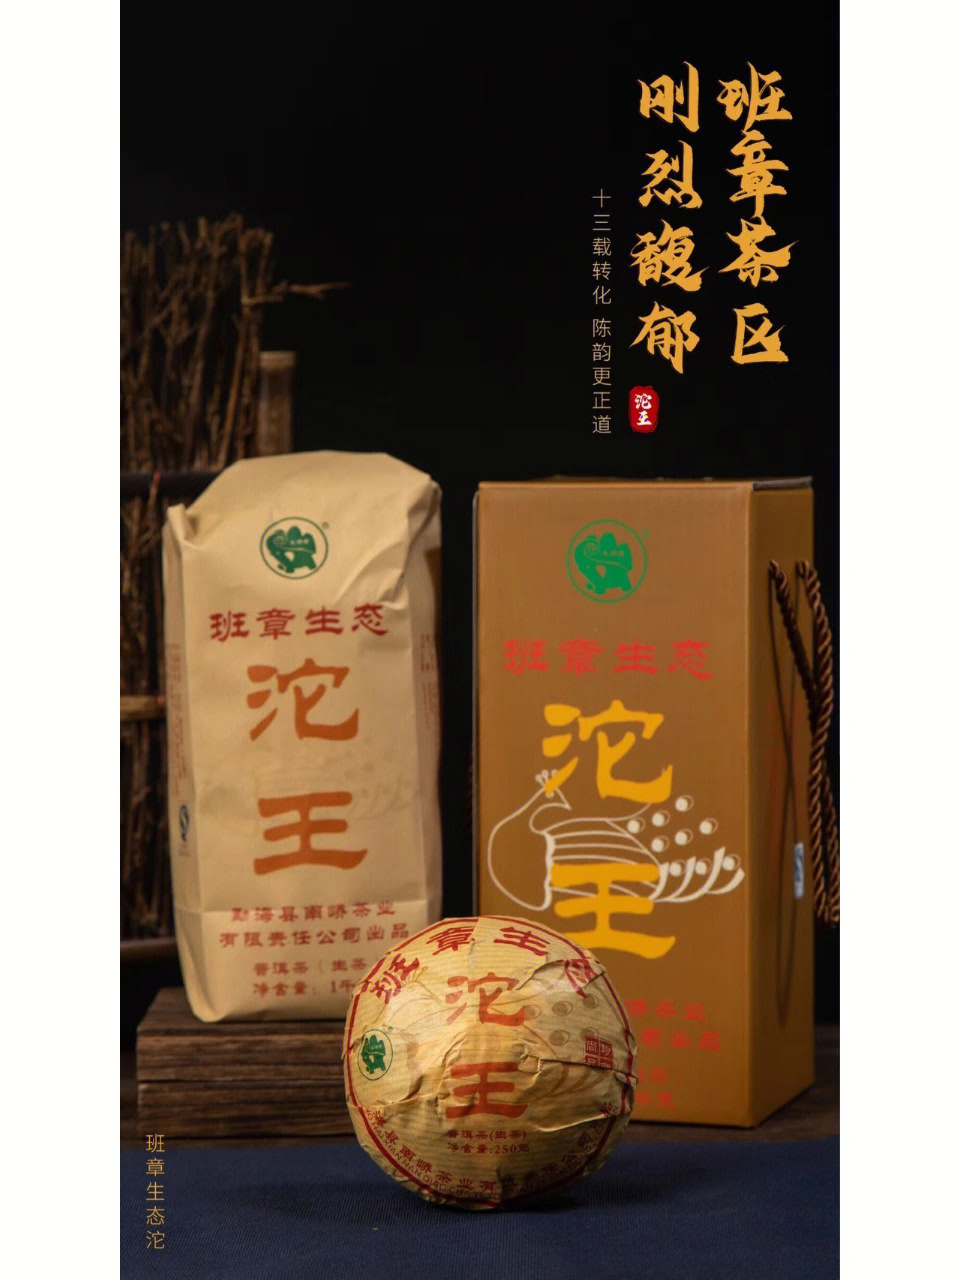 2008年南侨首批沱王再现经典传奇干茶